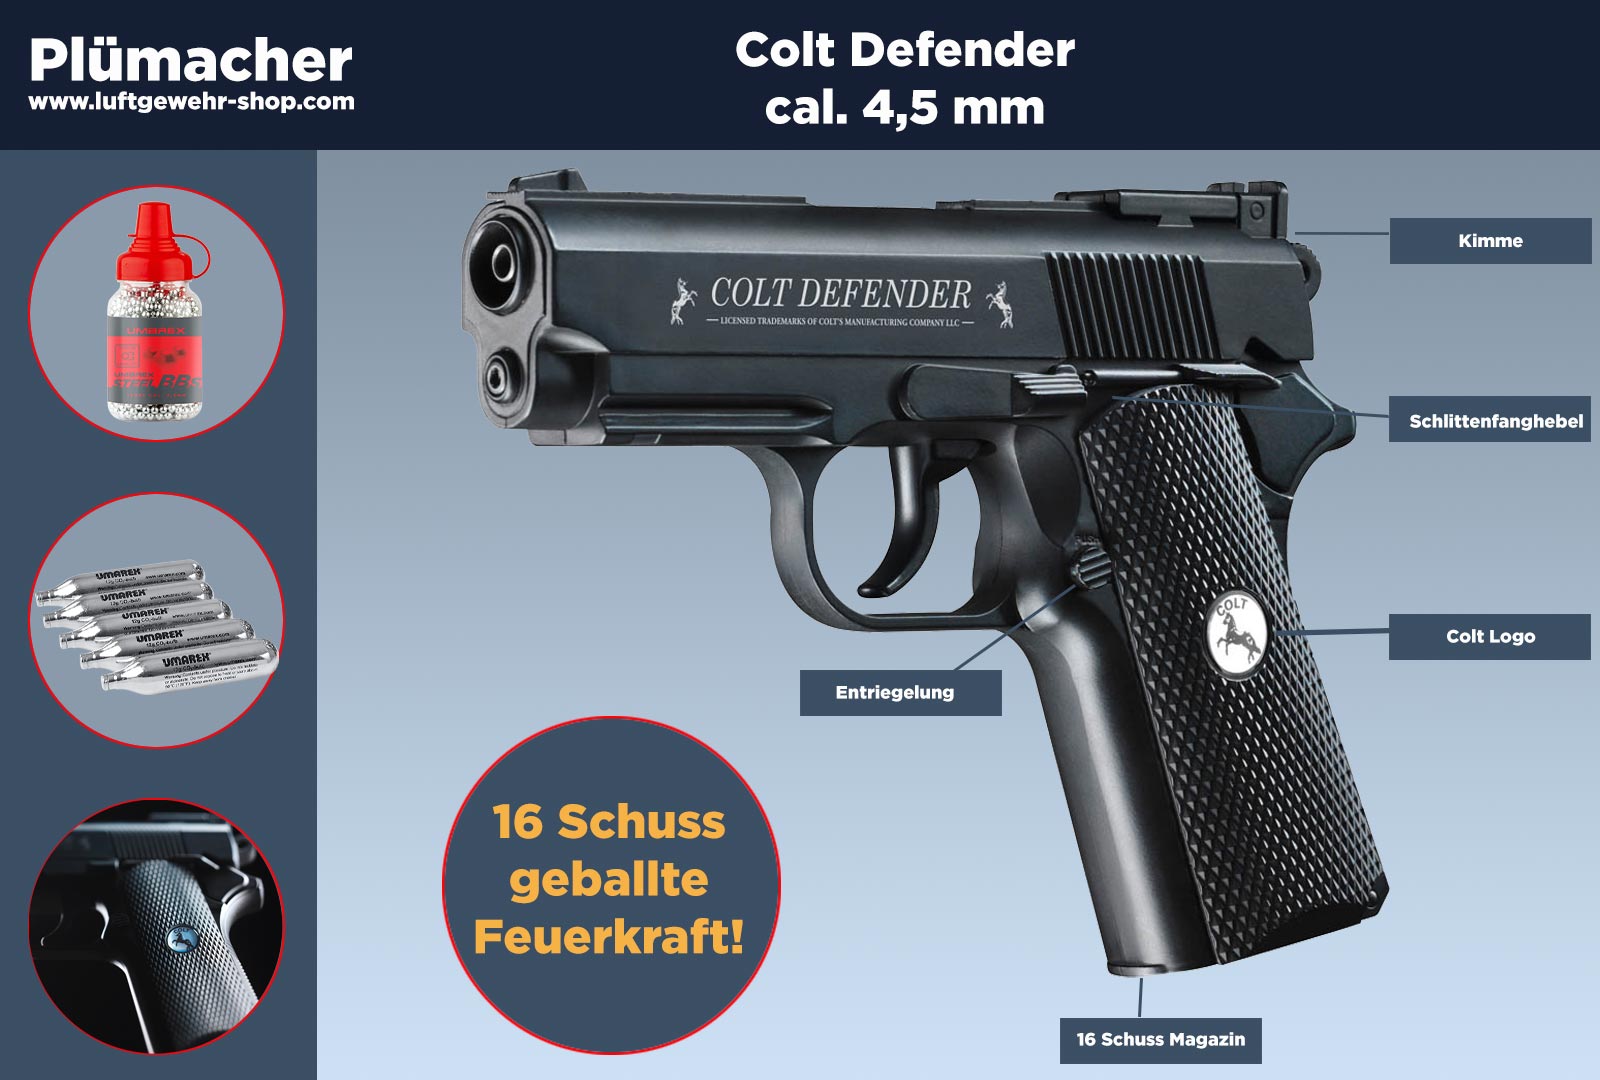 Colt Defender Komplettset CO2-Pistole im Kaliber 4,5 mm mit einem 16 Schuss  Magazin. Luftgewehr-Shop - Luftgewehre, Schreckschusswaffen, CO2 Waffen,  Luftpistolen kaufen